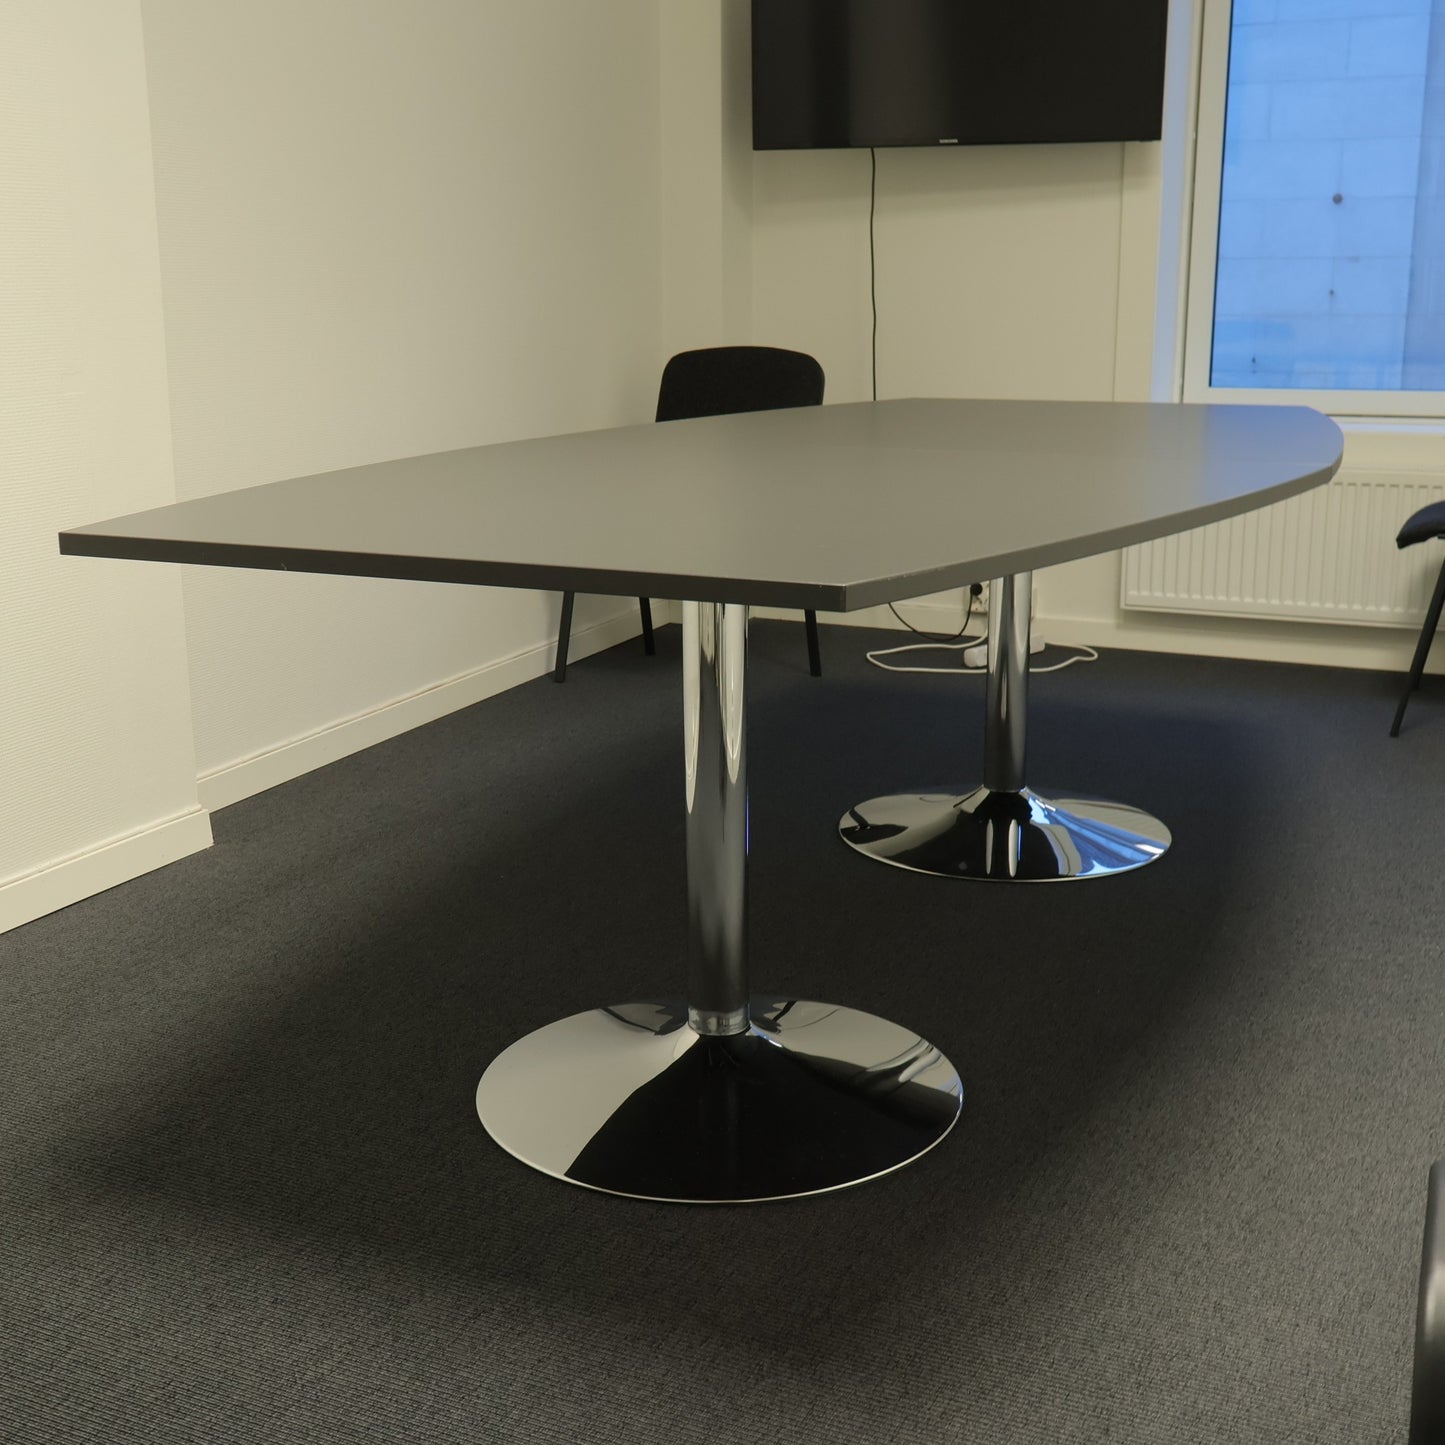 Kvalitetsikret | Møtebord i fargen sort, 240x120